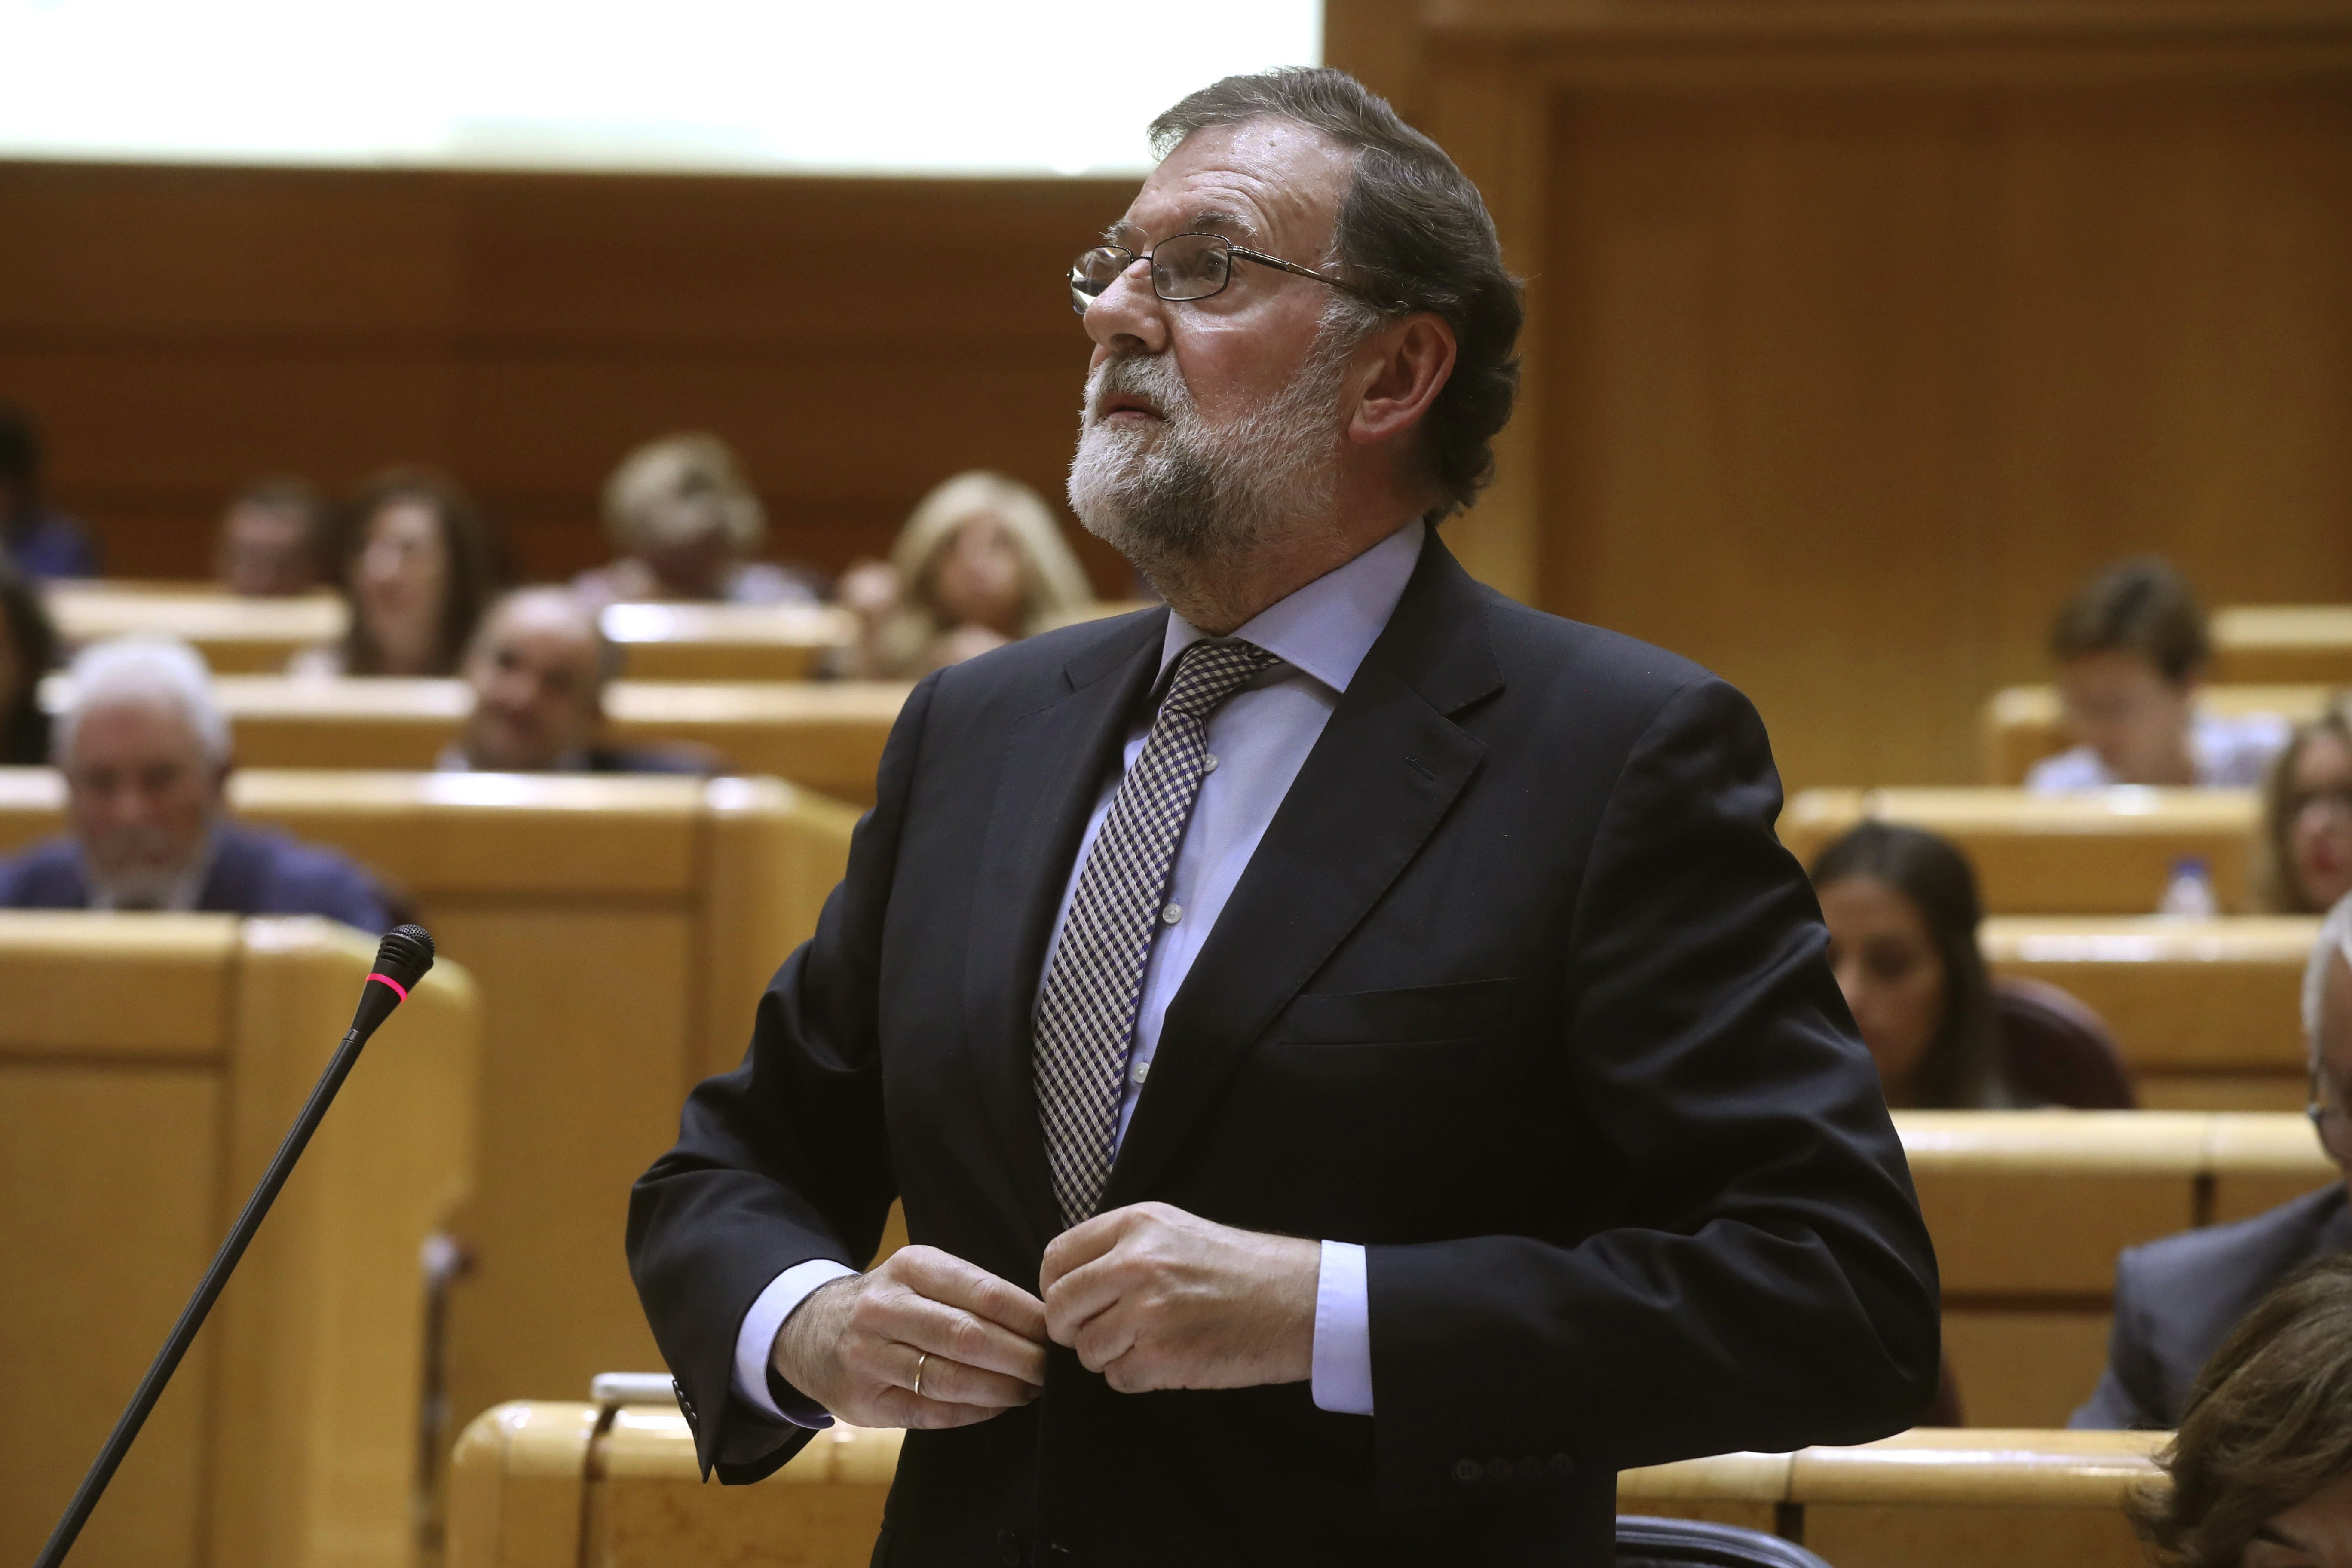 La prensa de Madrid carga contra Rajoy y Montoro por permitir actos "ilegales"